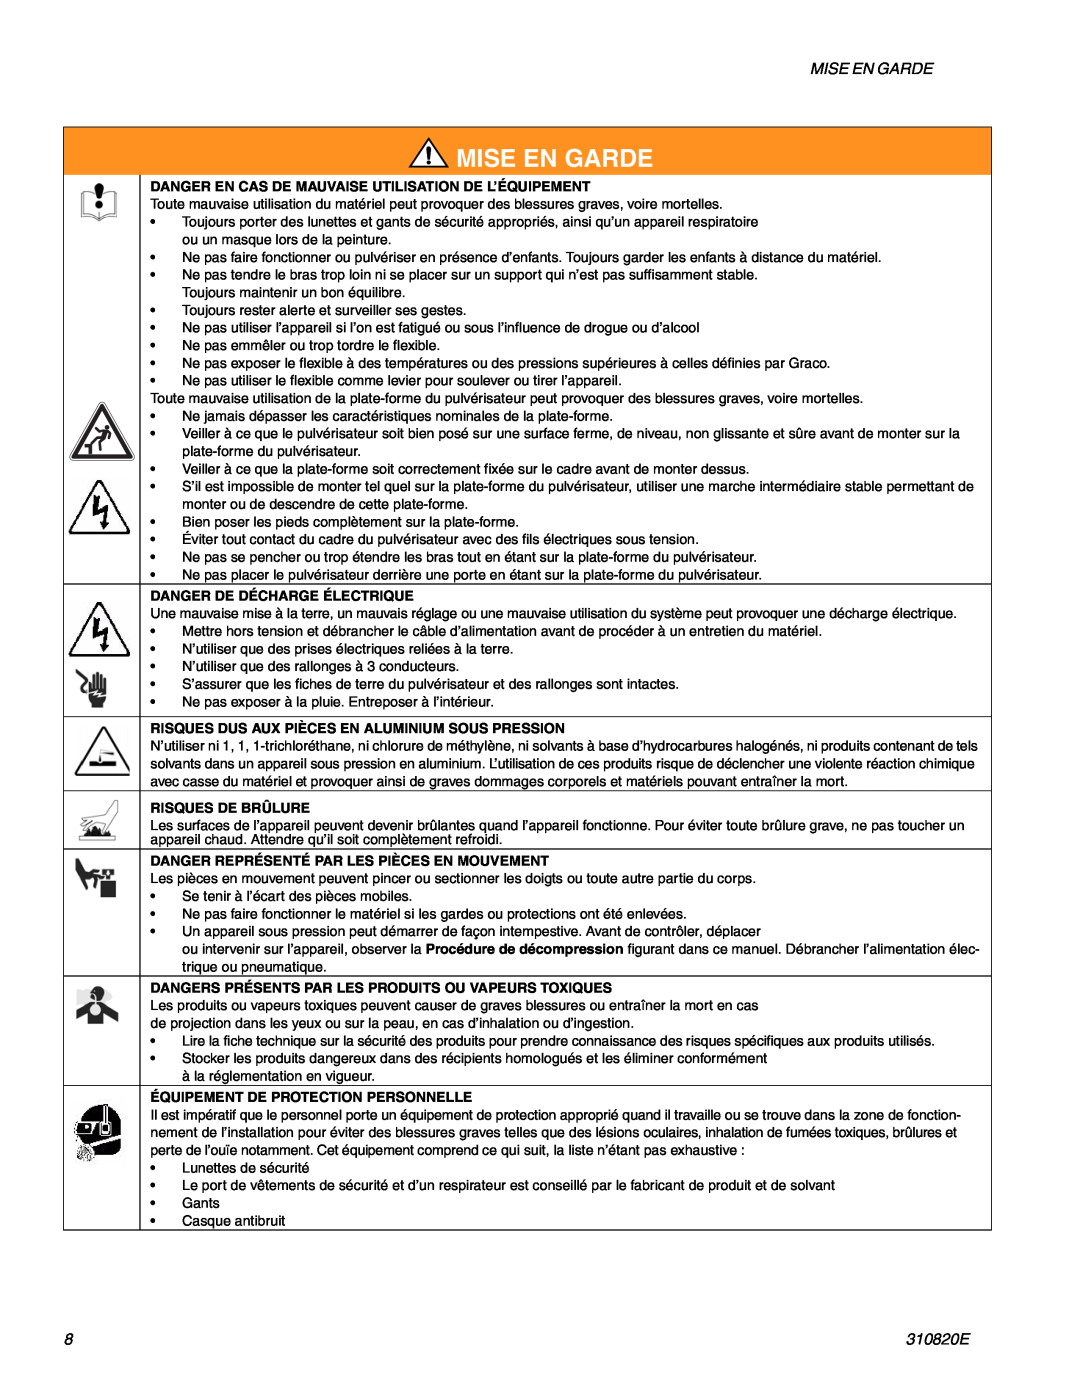 Graco Inc 310820E Mise En Garde, Danger En Cas De Mauvaise Utilisation De L’Équipement, Danger De Décharge Électrique 